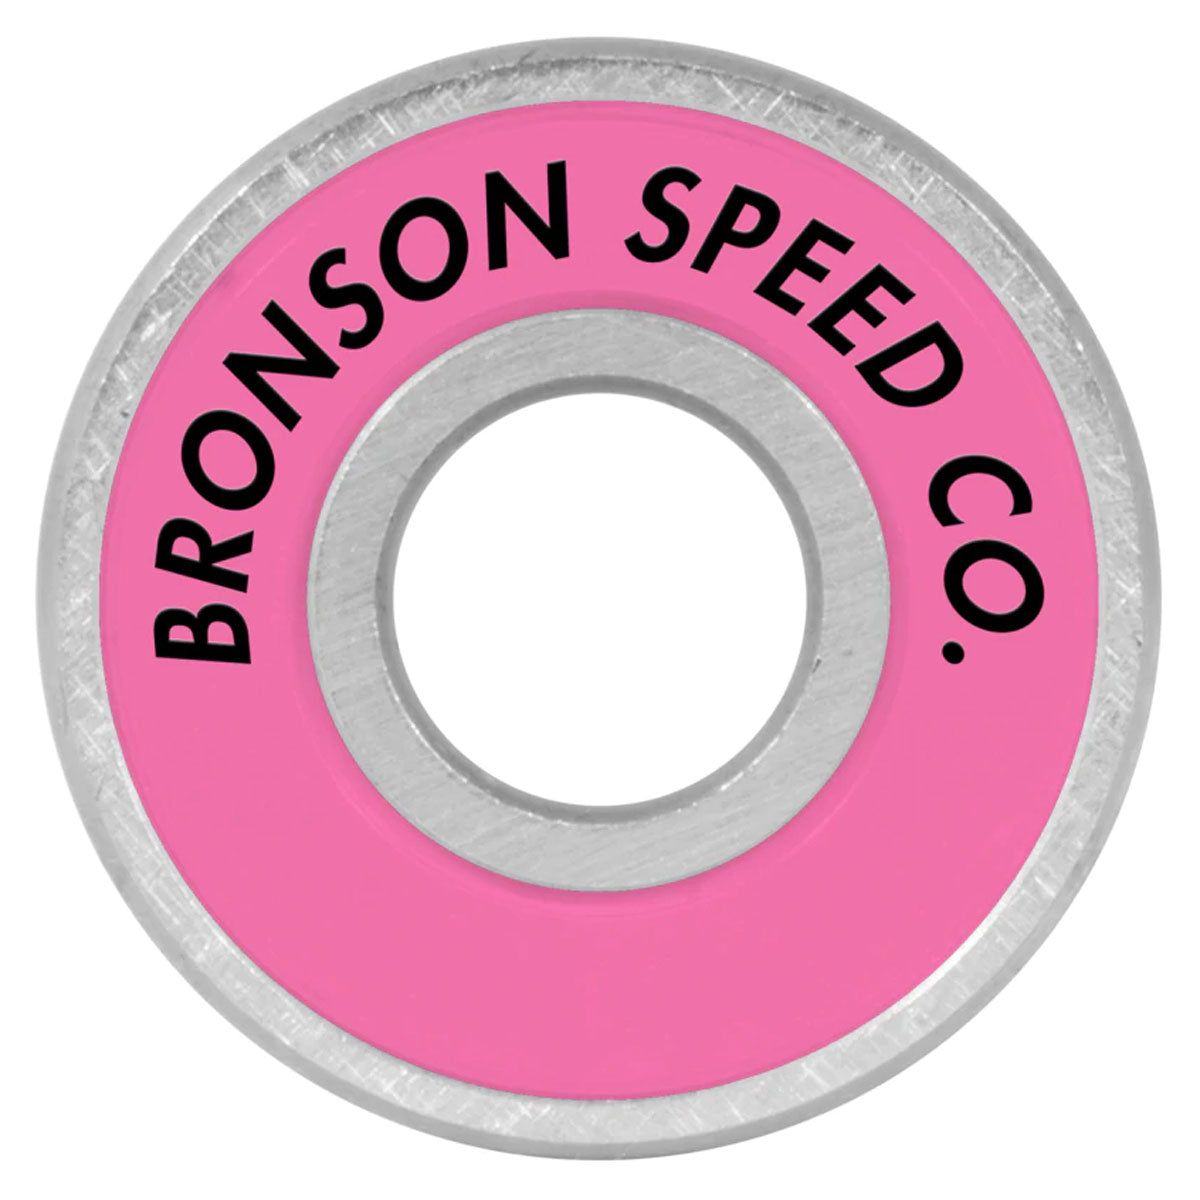 Bronson Alex Midler Pro G3 Bearings - Pink image 1